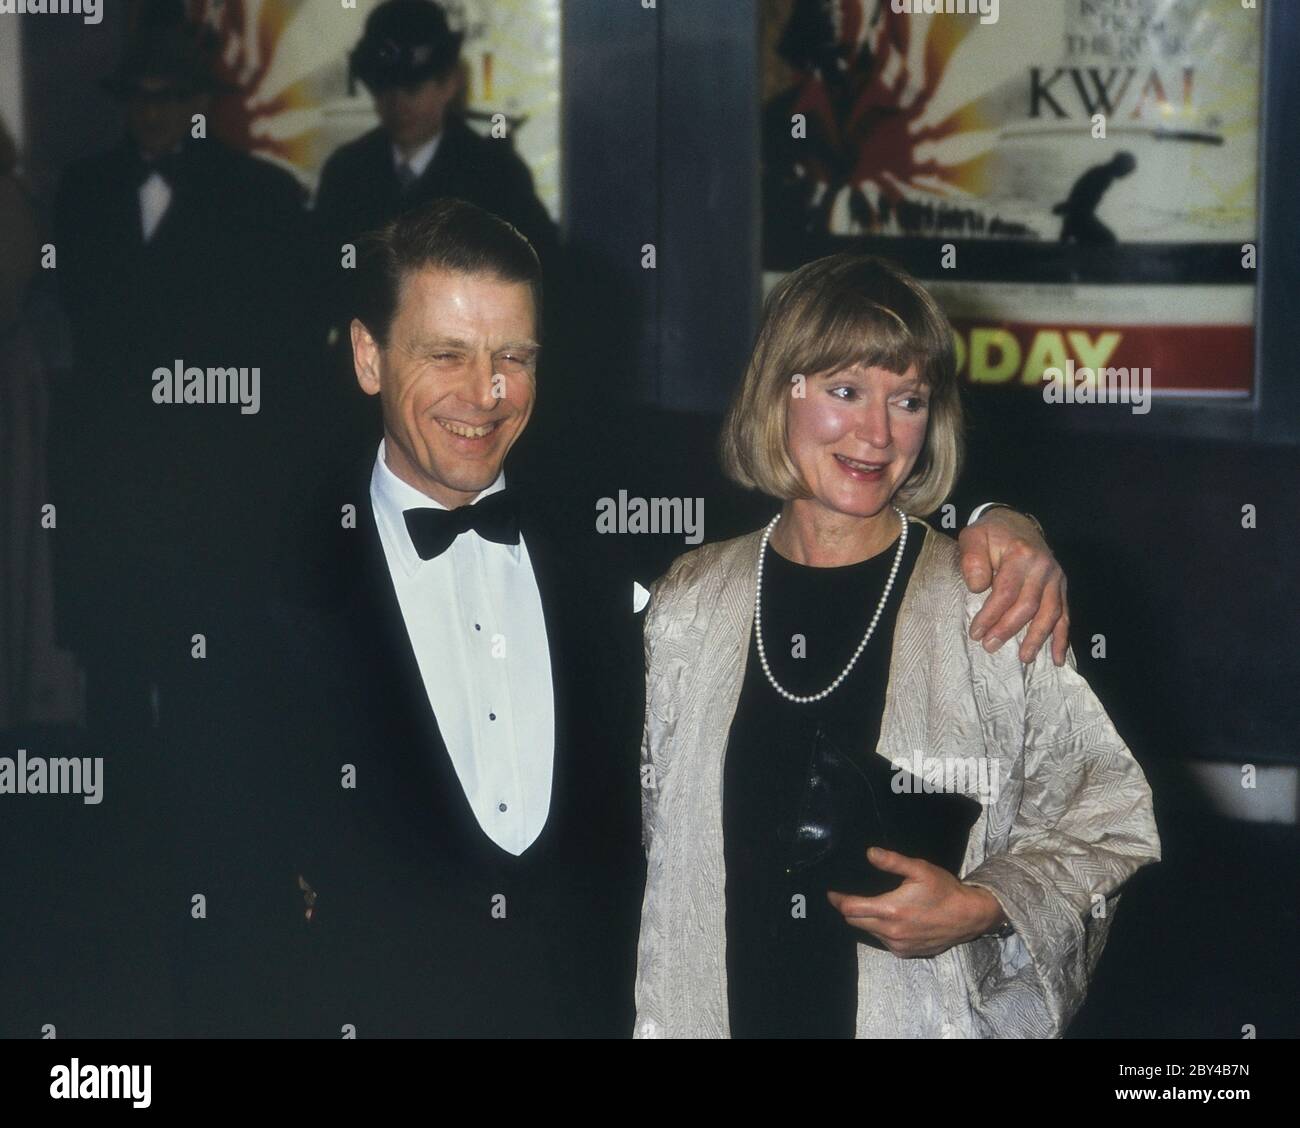 L'acteur anglais Edward Fox accompagné de son épouse l'actrice Joanna David. Assistez au premier ministre du film 'Return from the River Kwai'. Londres. Angleterre. ROYAUME-UNI. 1989 Banque D'Images